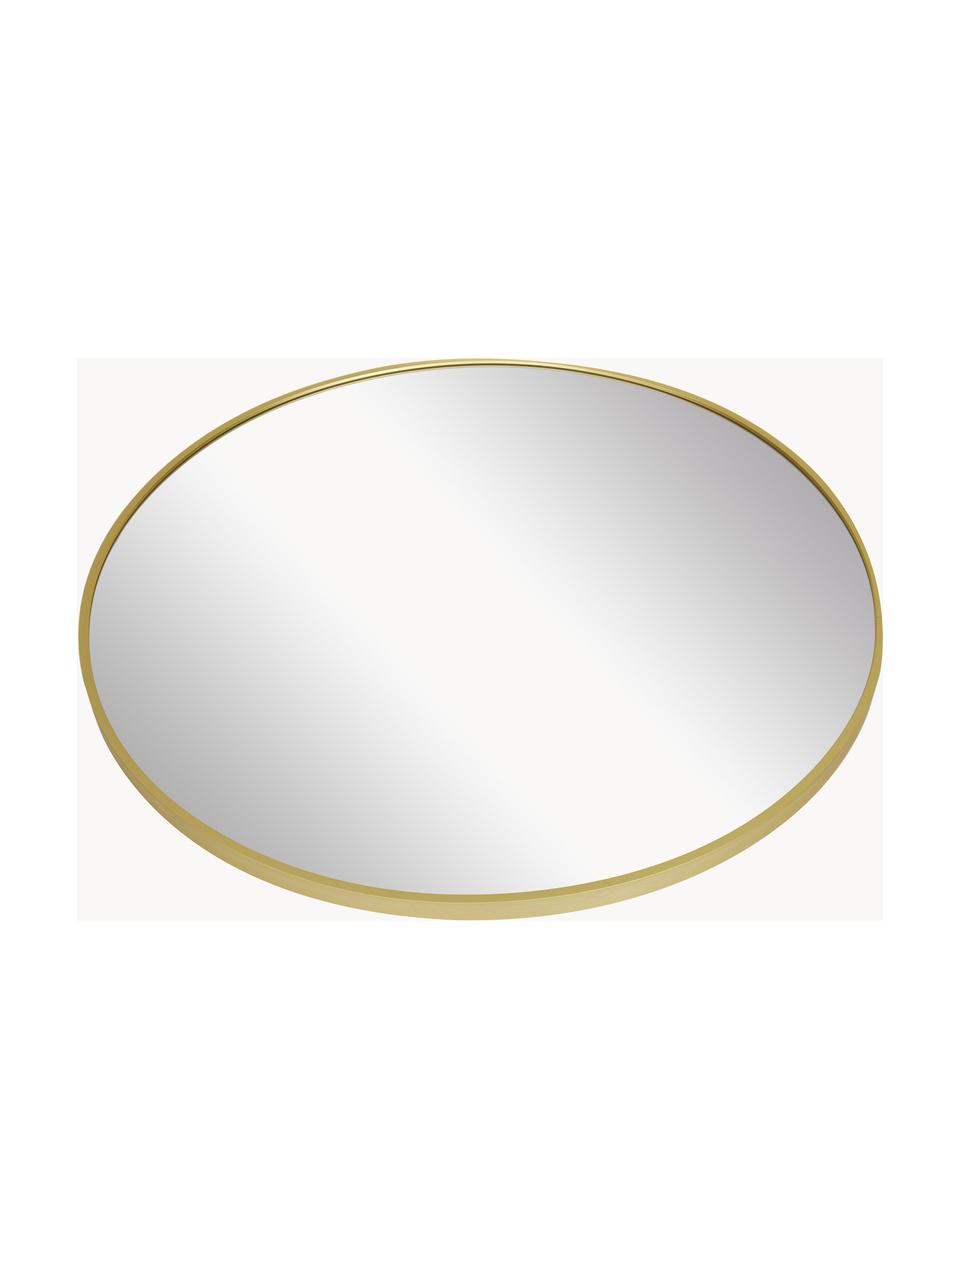 Runder Wandspiegel Ida, Rahmen: Aluminium, beschichtet, Rückseite: Mitteldichte Holzfaserpla, Spiegelfläche: Spiegelglas, Goldfarben, Ø 55 cm